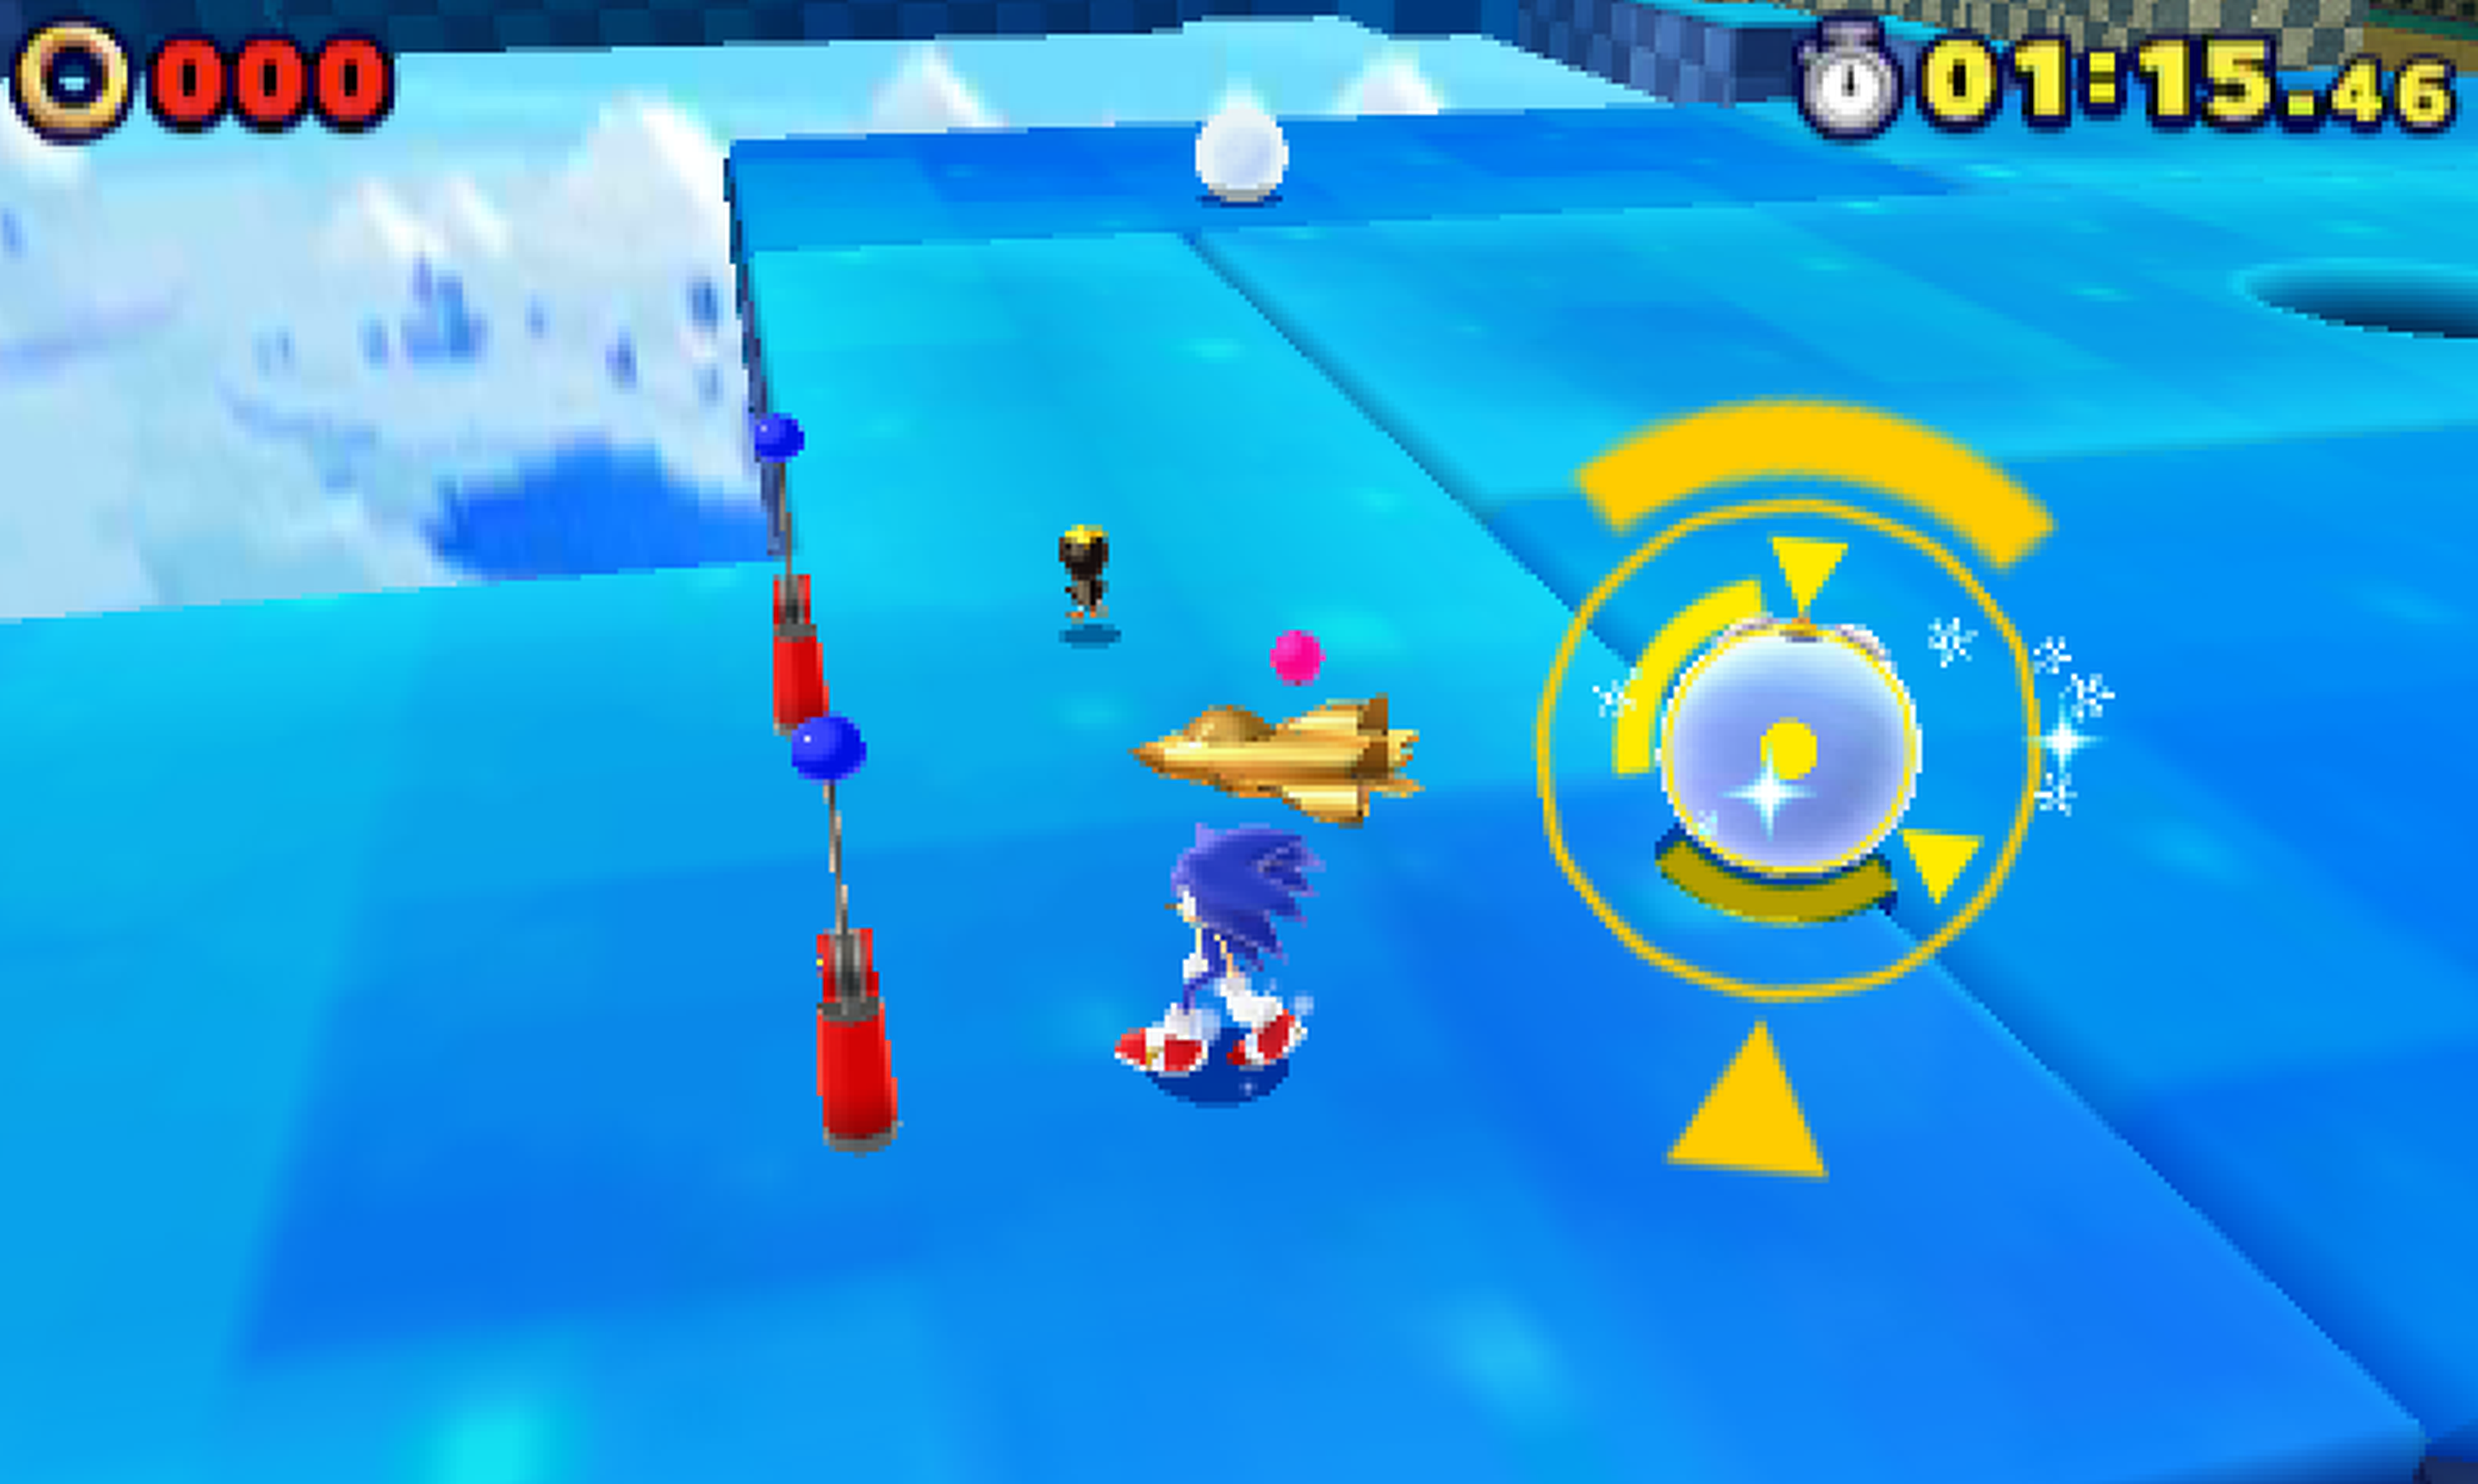 Análisis de Sonic Lost World 3DS